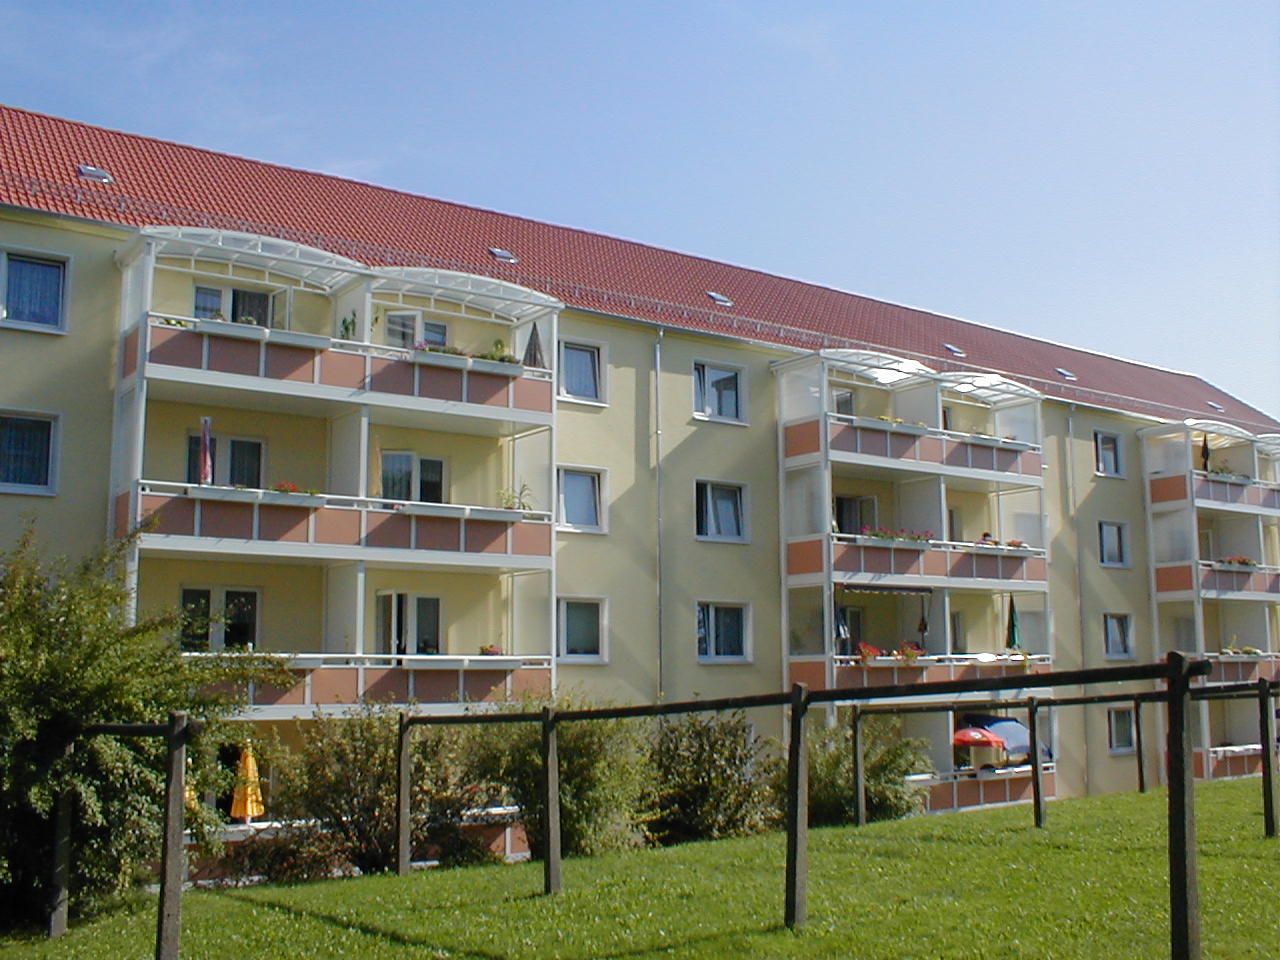 Wohnungen zur Vermietung in Lichtenstein - sonnige Ansicht des Wohnhauses mit Rasenfläche